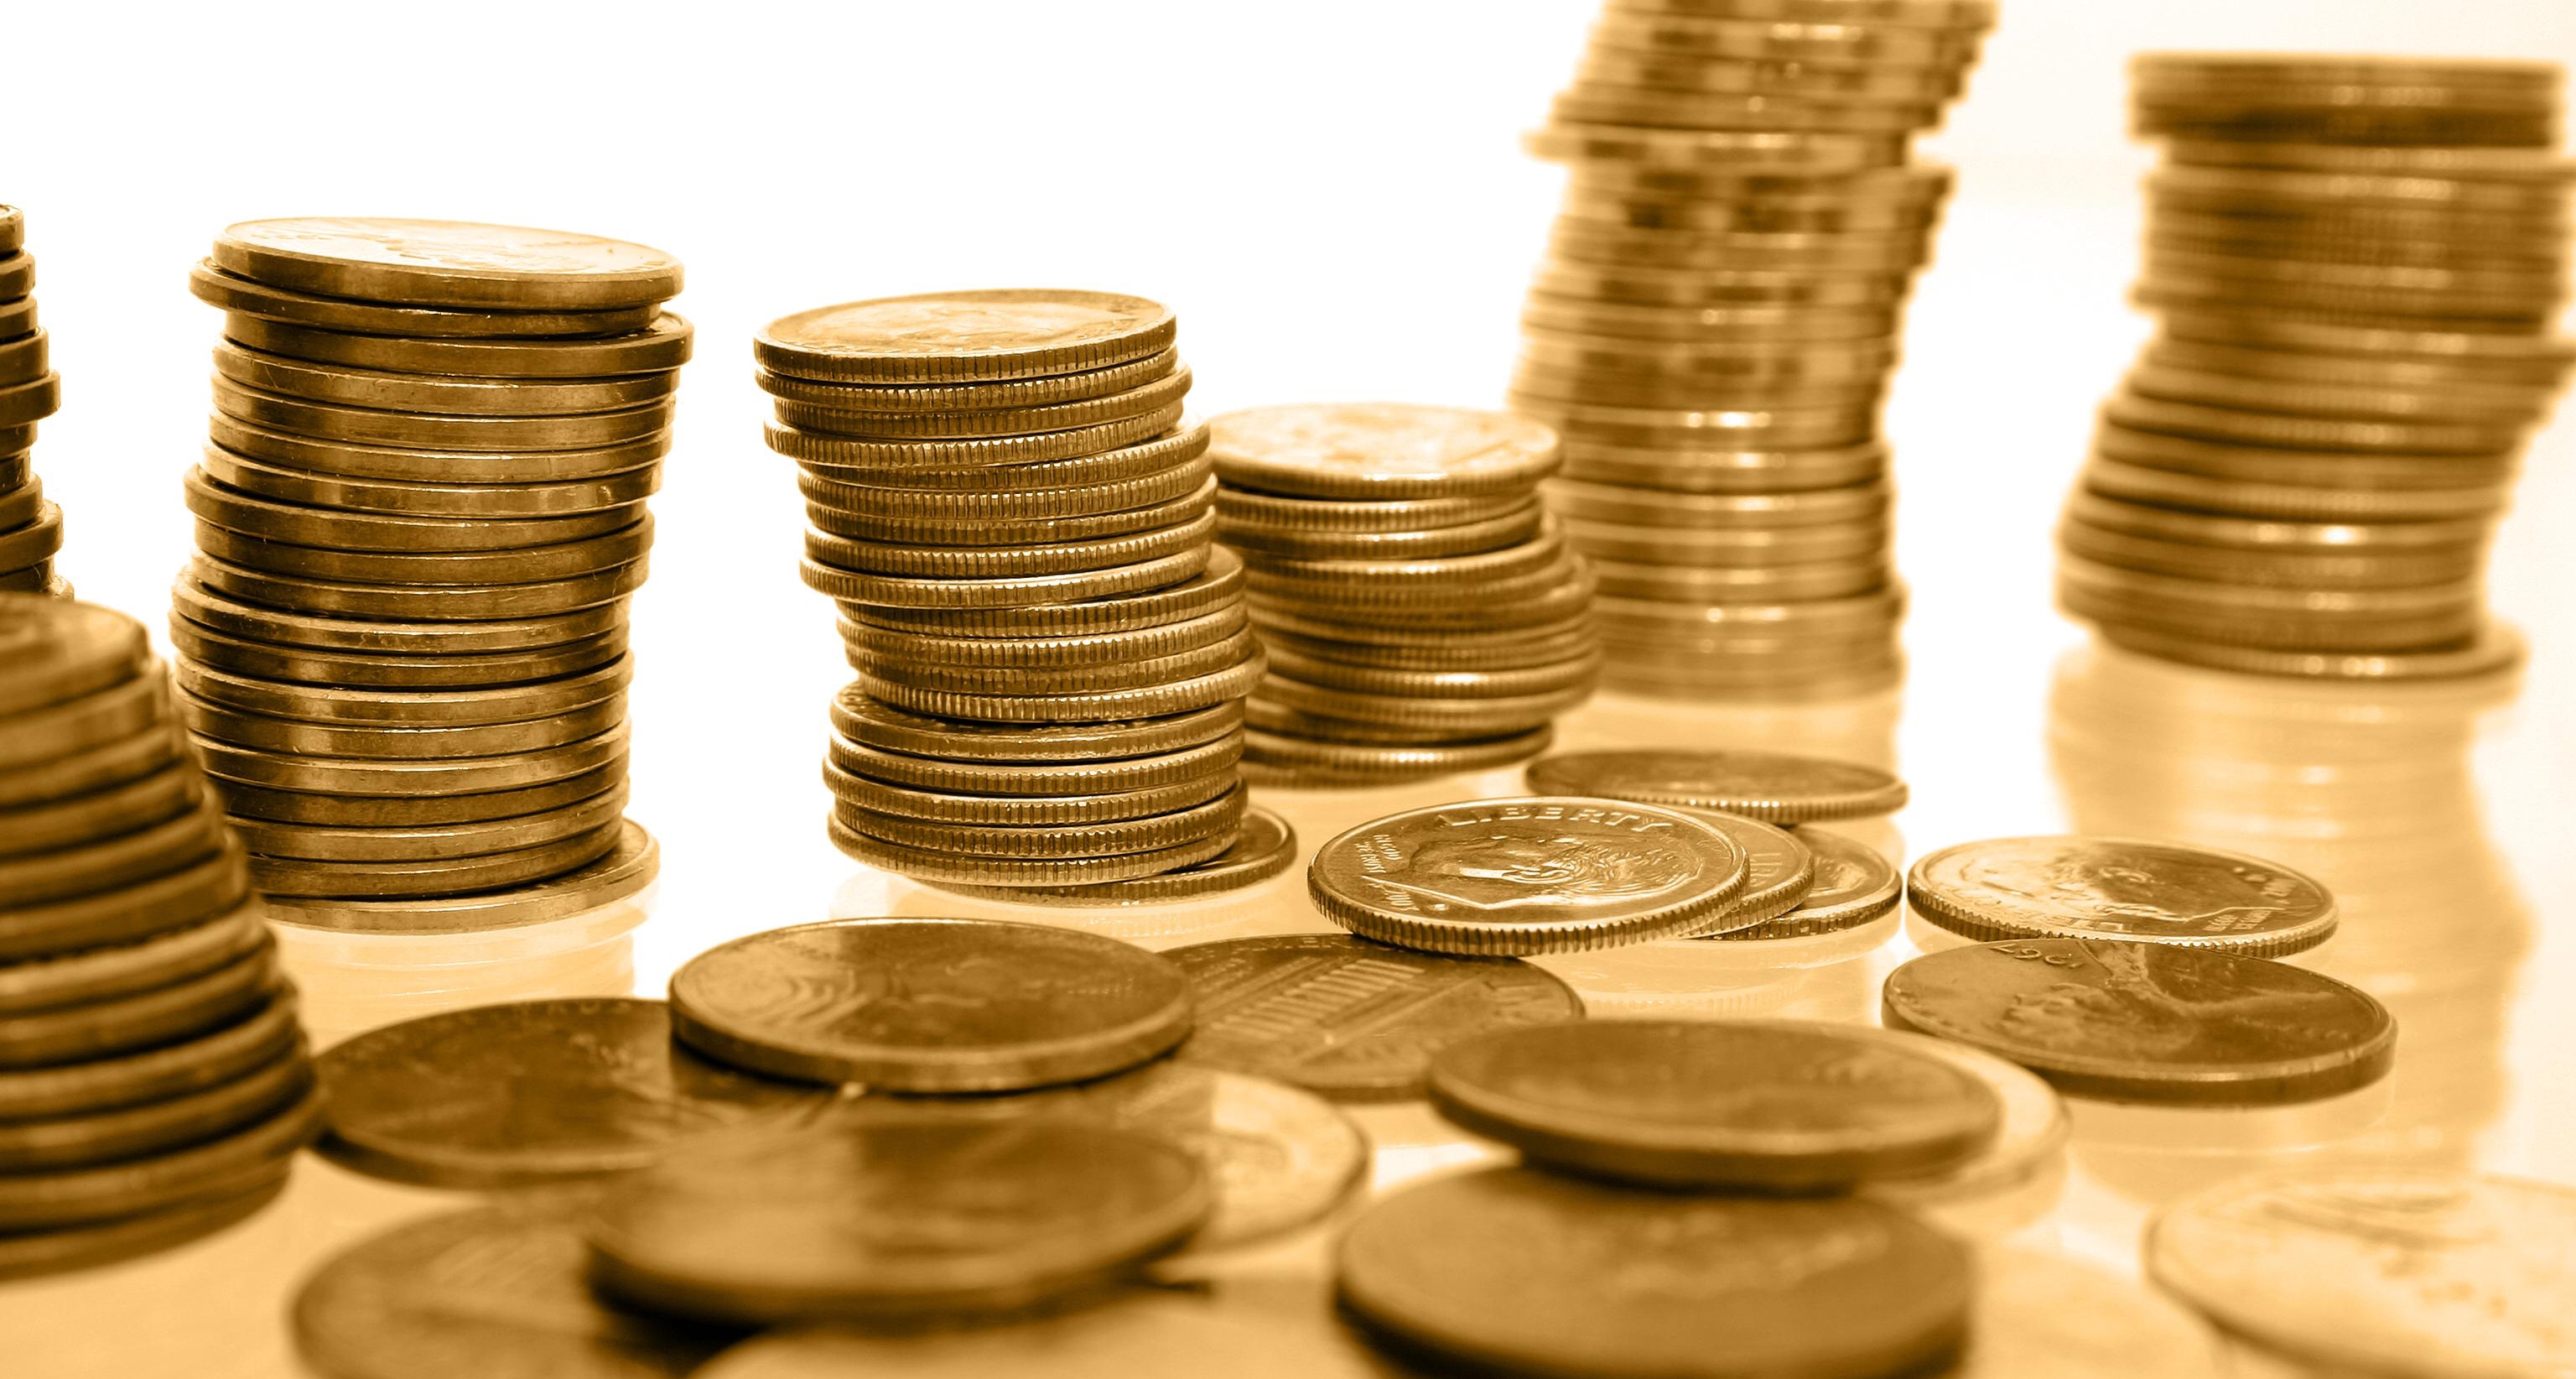 رد پای اتحادیه طلا در تخلف سکه ثامن/ مبادلات مالی چگونه انجام شد؟